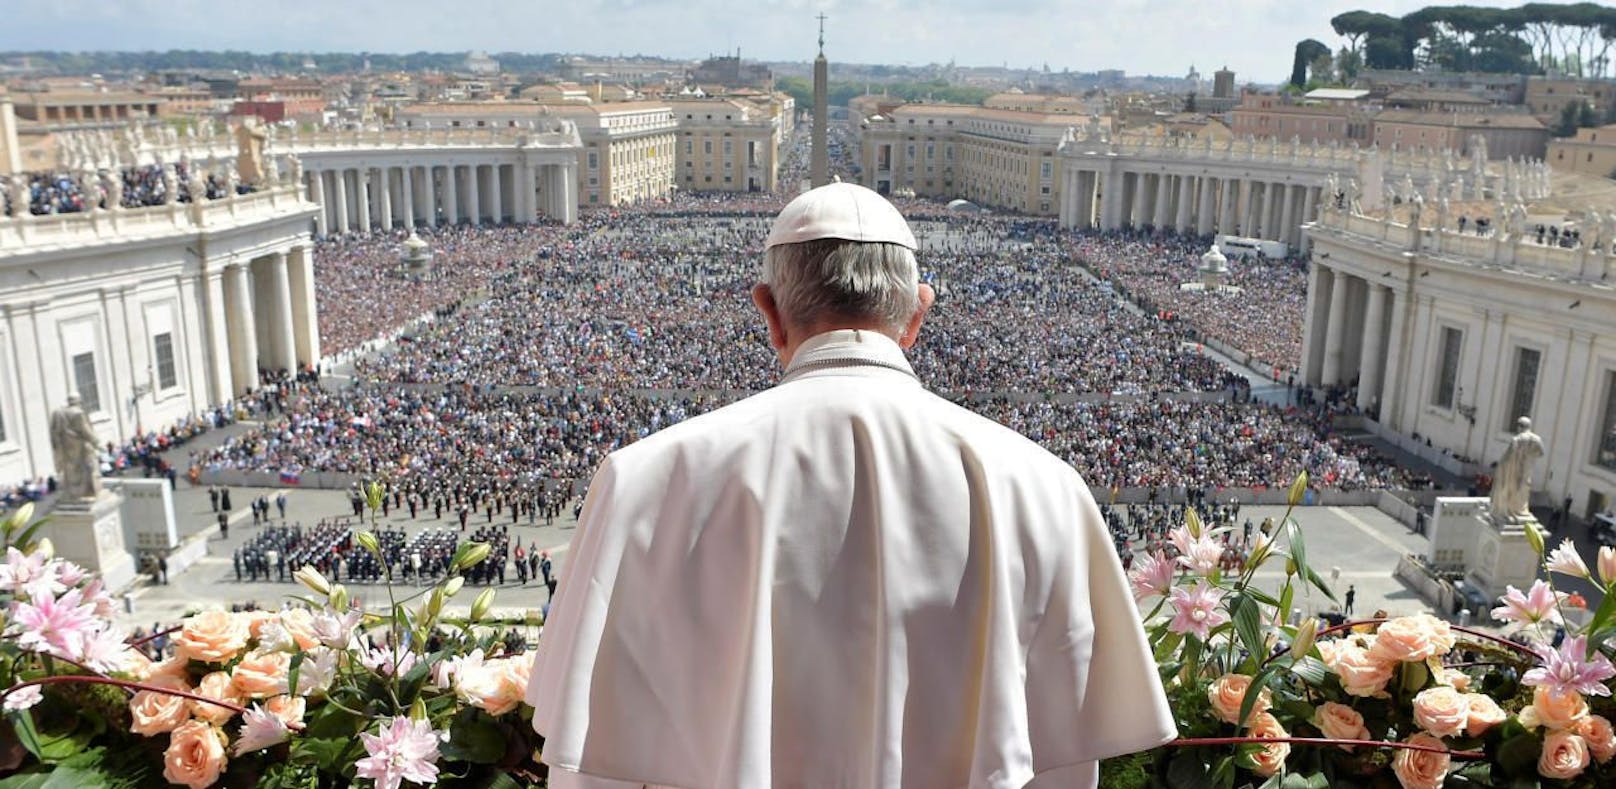 "Wirtschaft, die tötet": Papst hielt Wut-Predigt